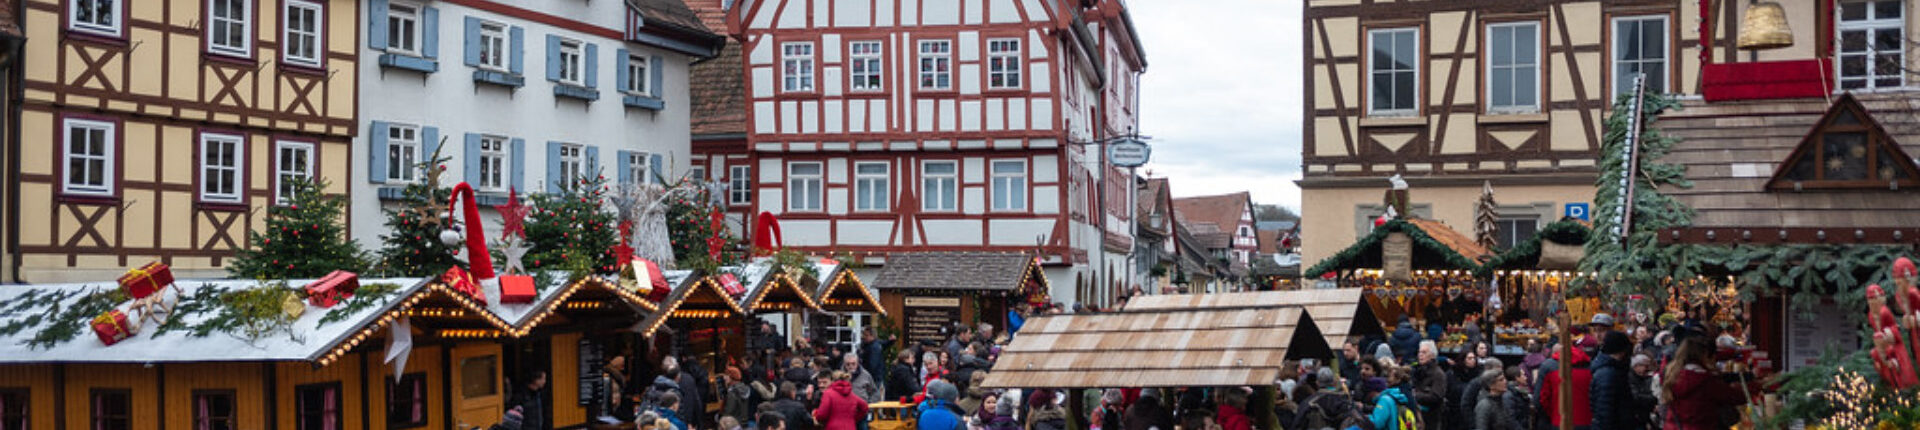 Sorties seniors : découverte des marchés de Noël allemands